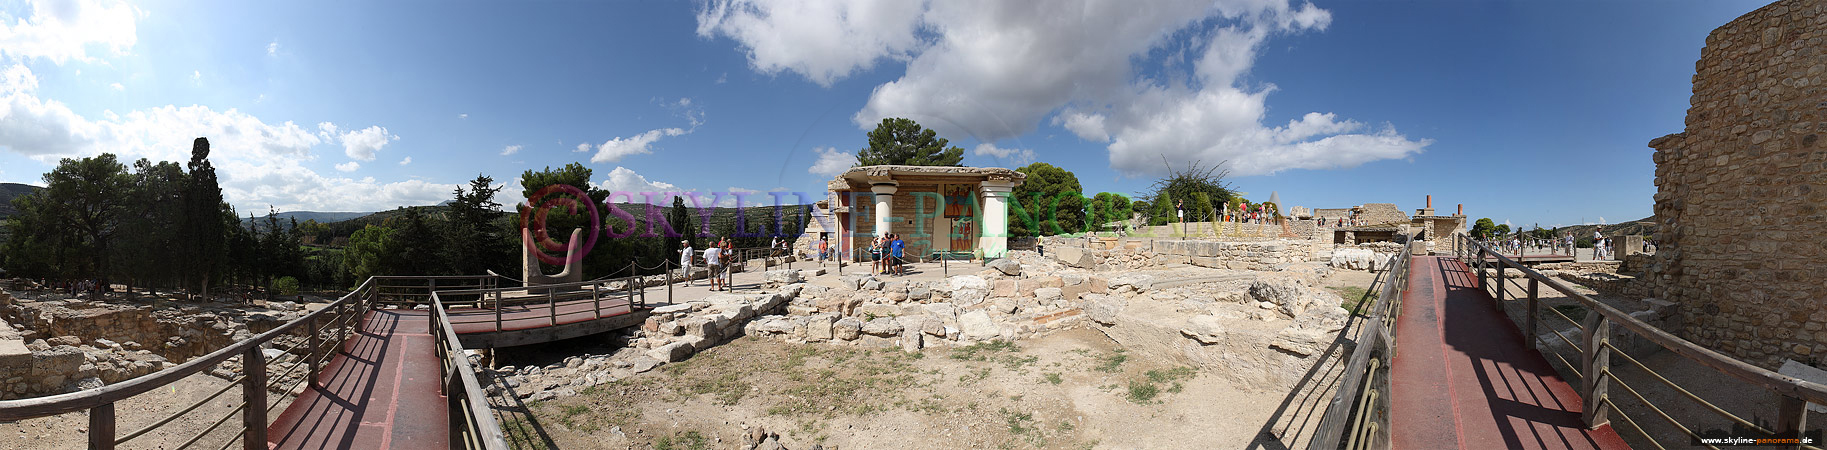 Knossos – Kreta (p_00165)